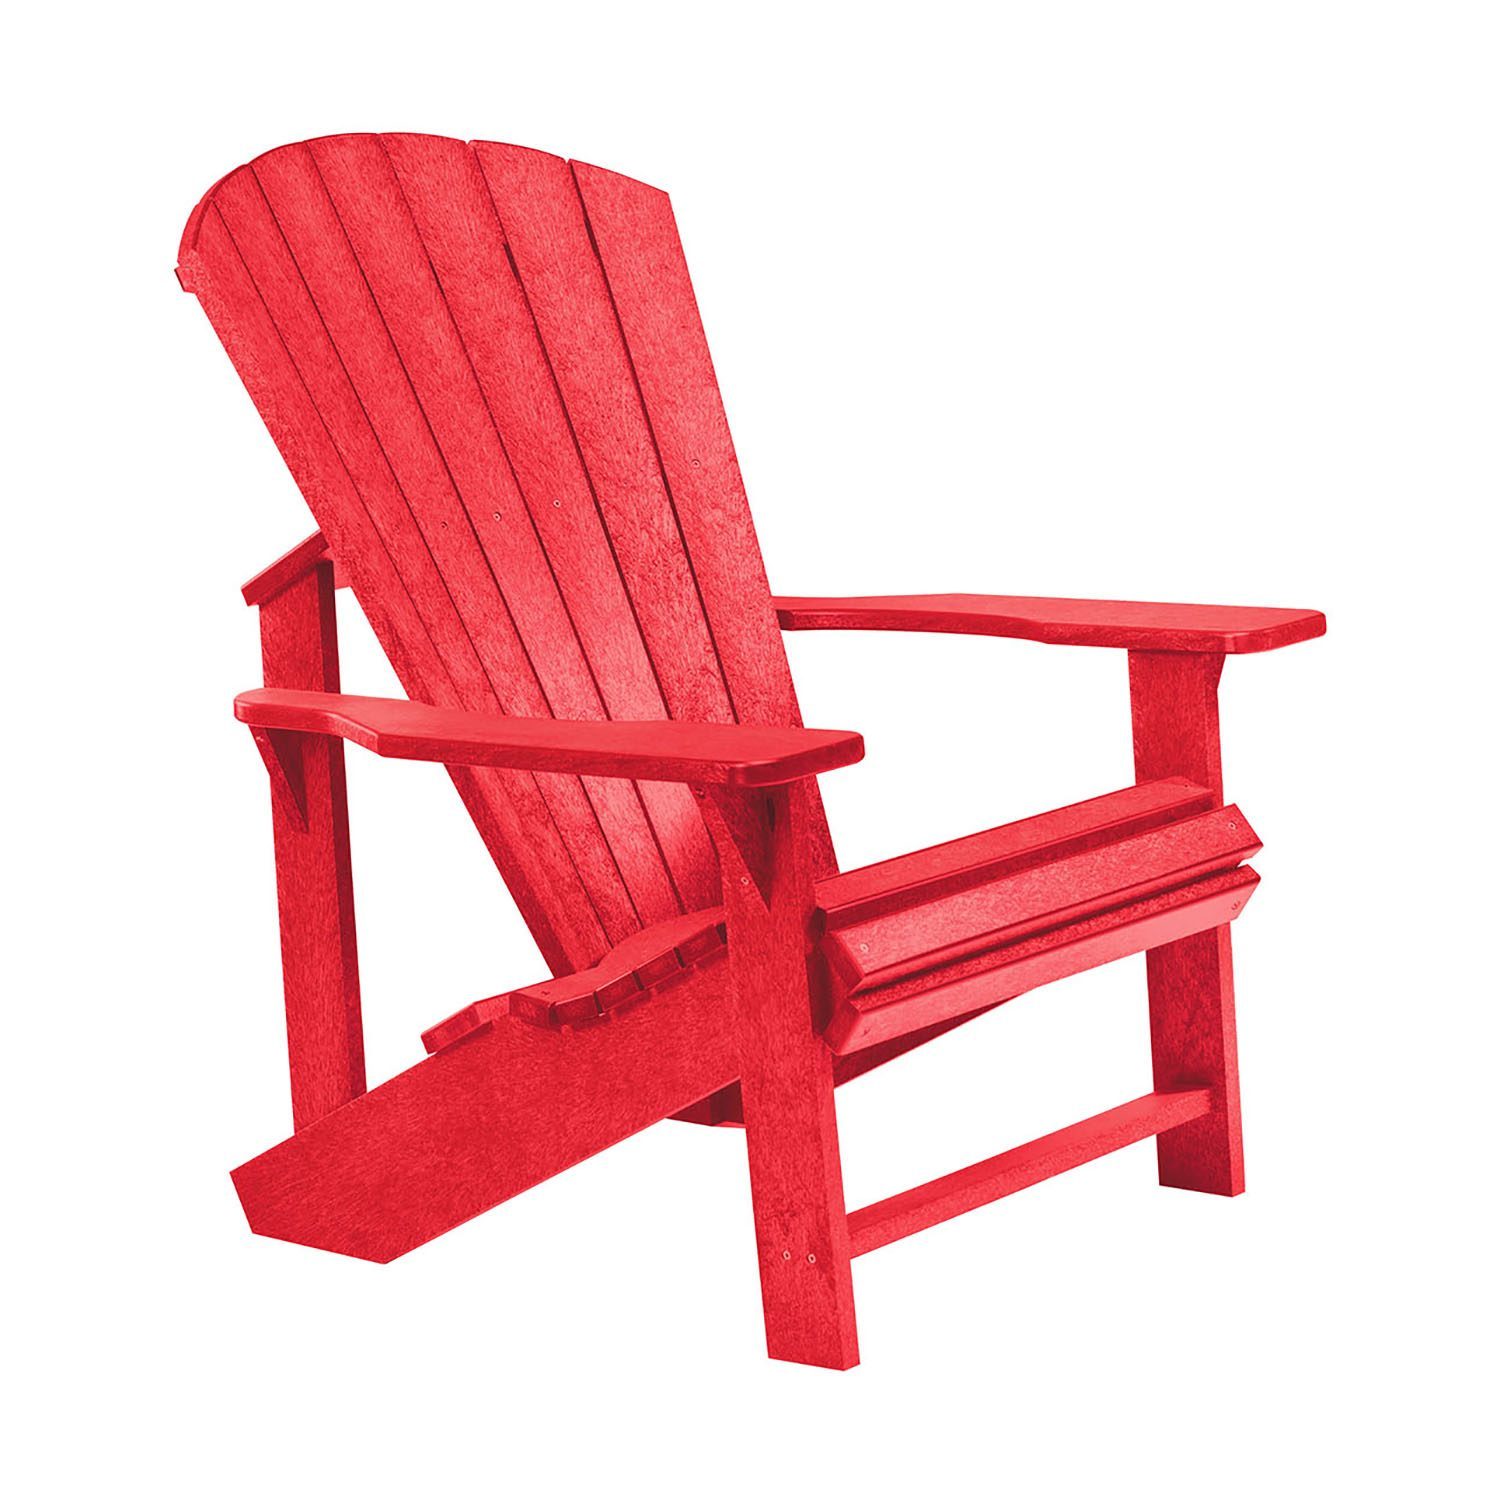 Adirondackstol i återvunnen plast, här i rött.